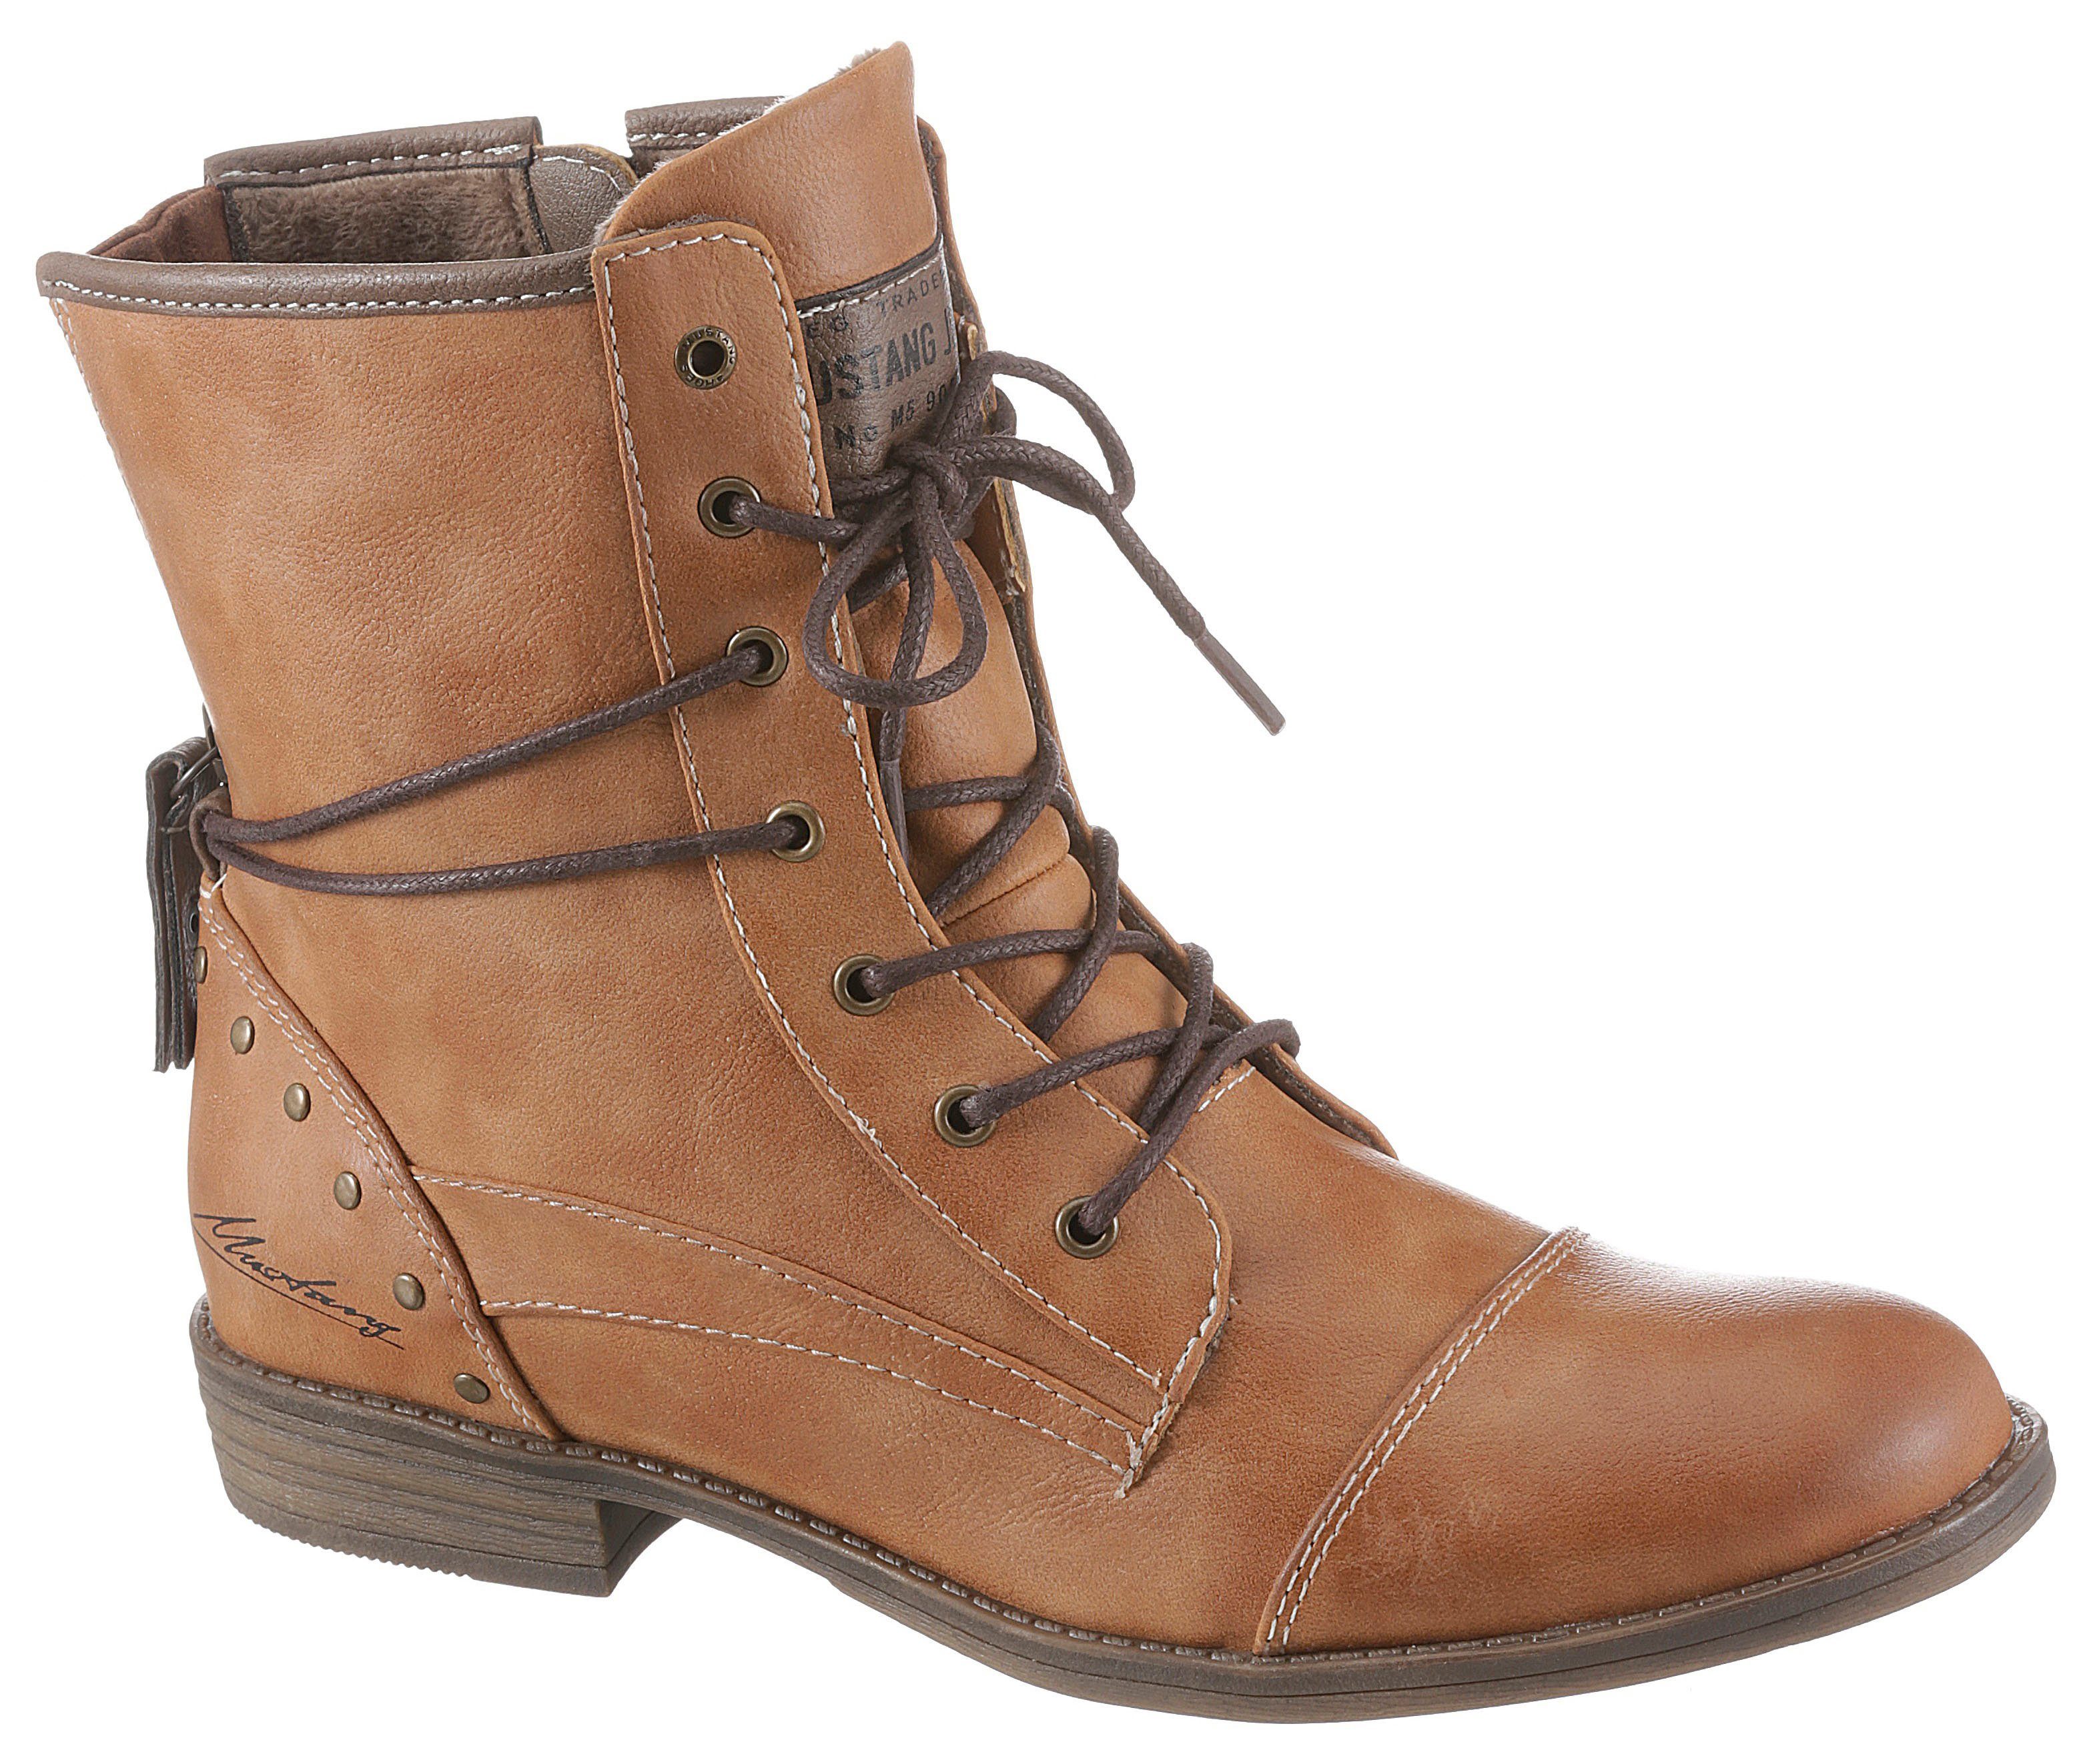 Günstige Stiefel für Damen online kaufen » Stiefel SALE | OTTO